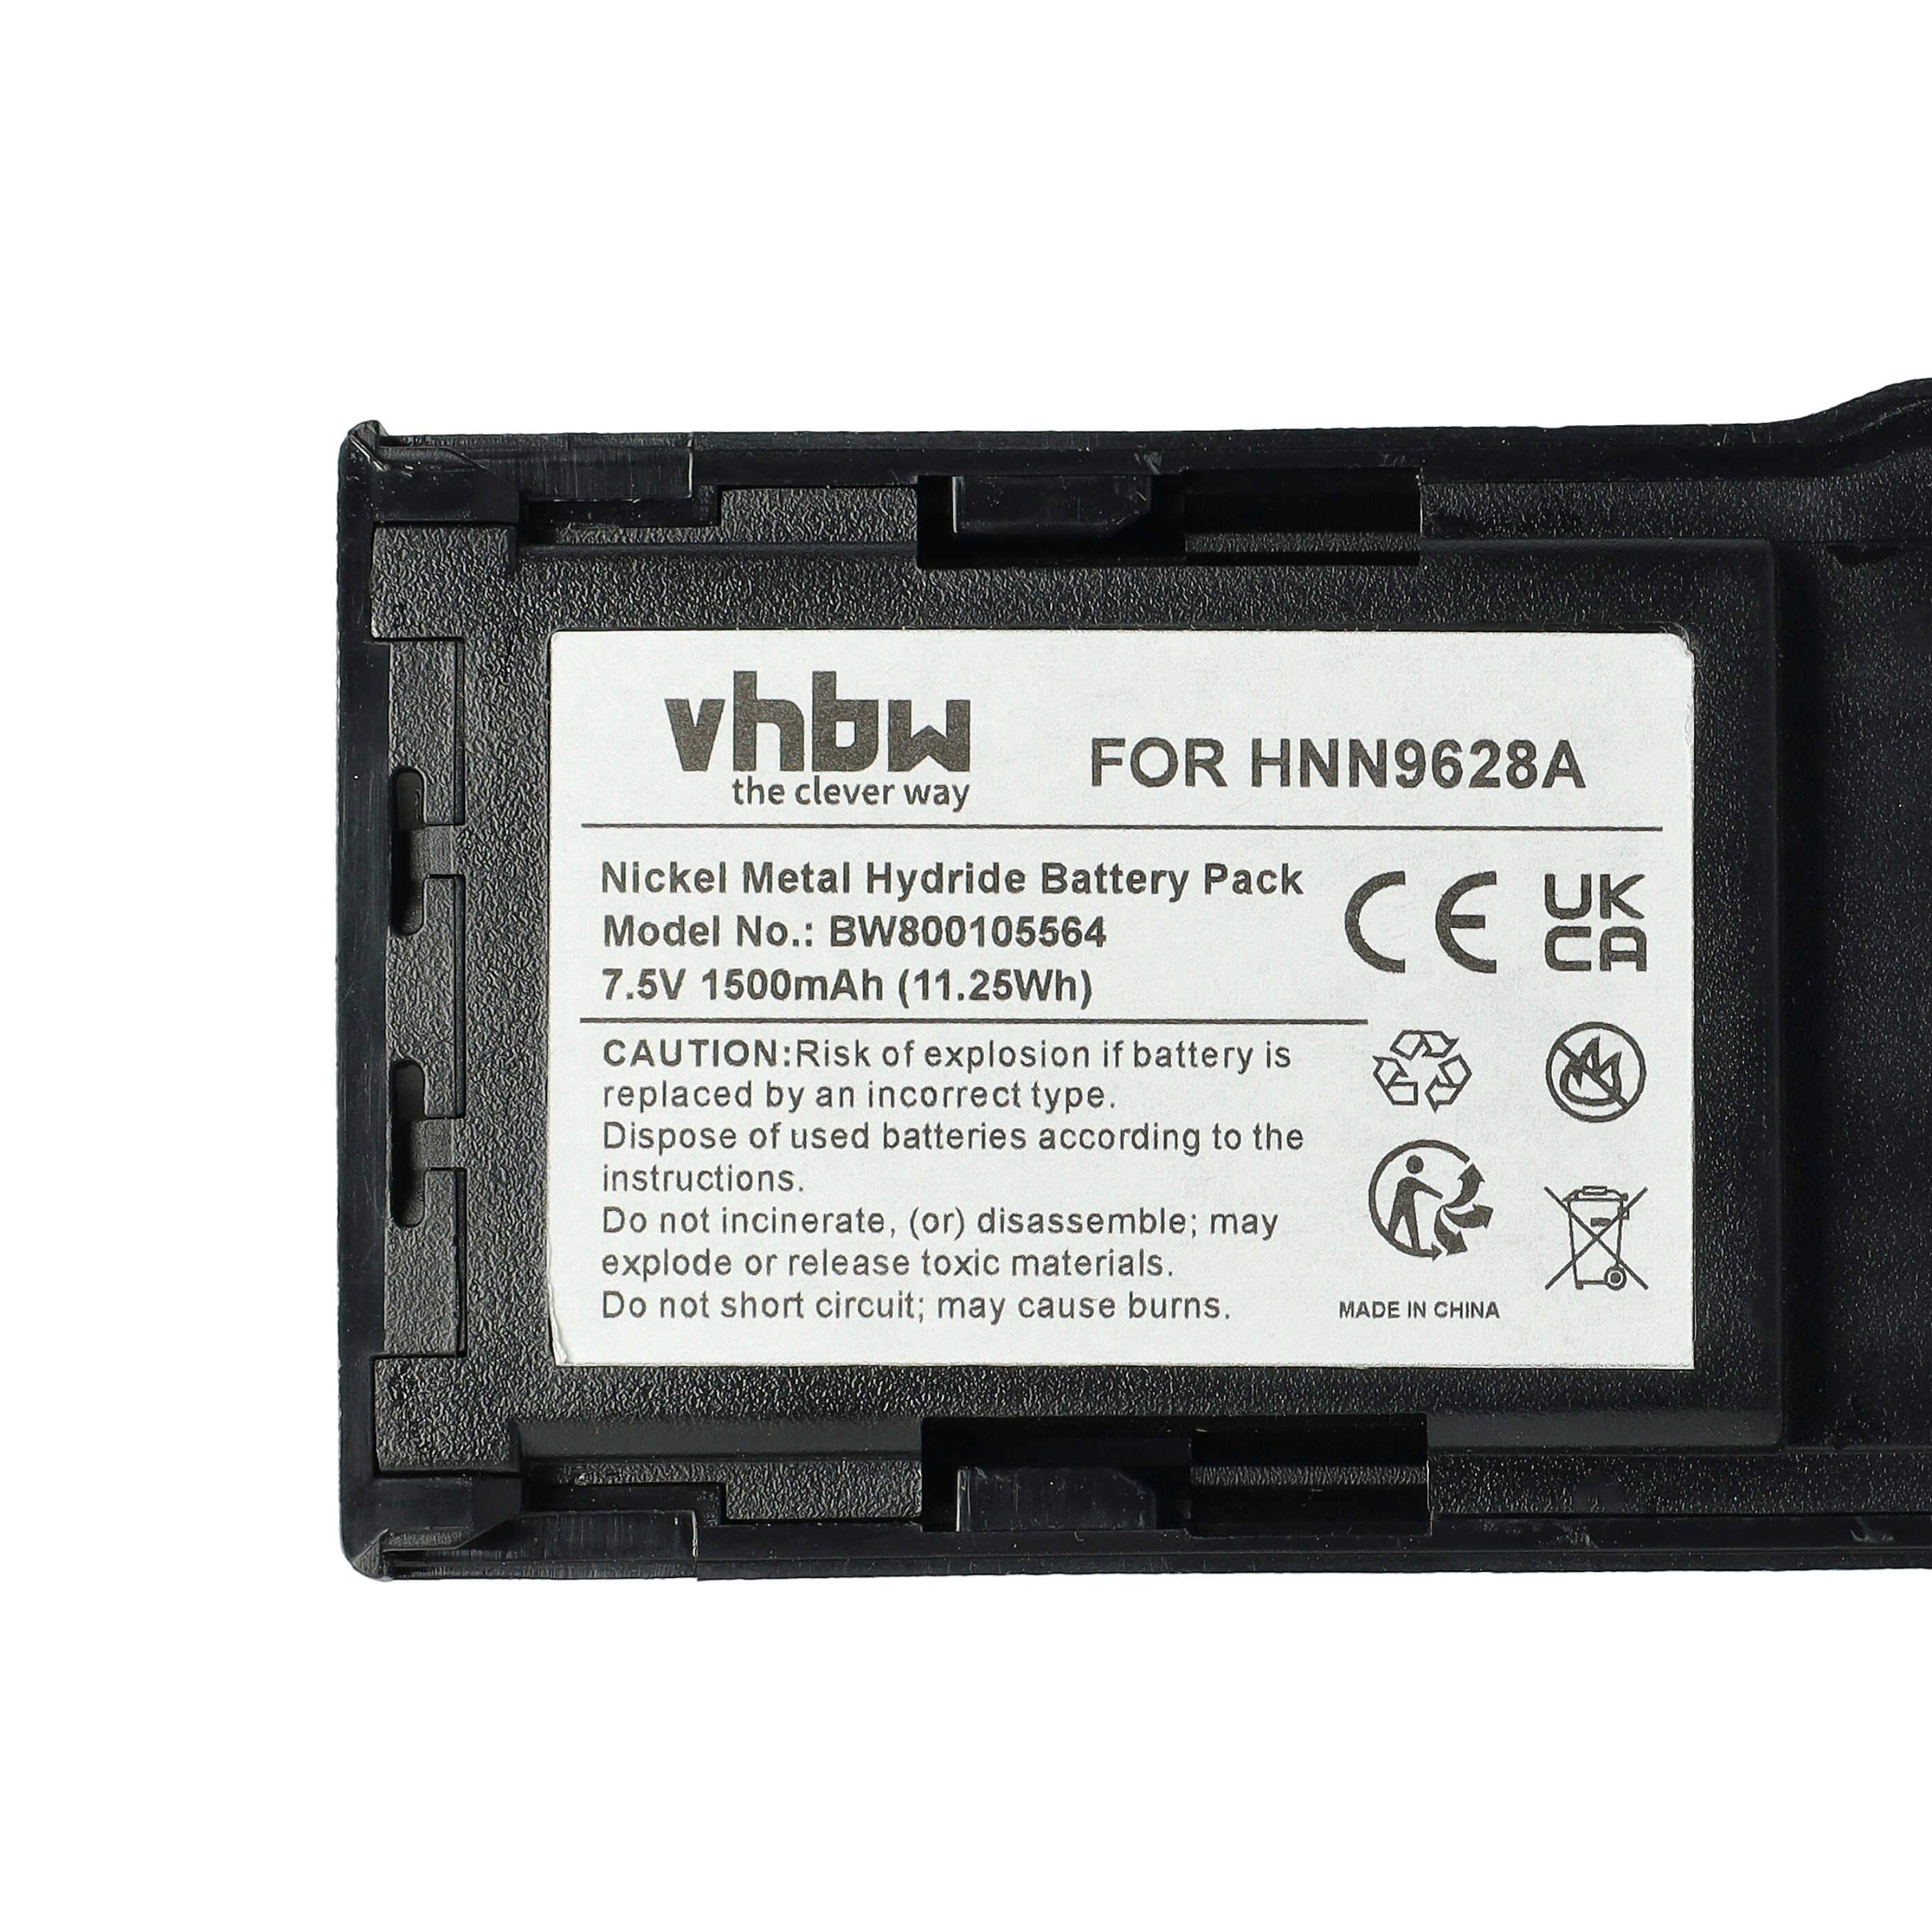 Batterie remplace Motorola HNN8133C, HNN9628A, HNN8308A, HNN9628 pour radio talkie-walkie - 1500mAh 7,5V NiMH